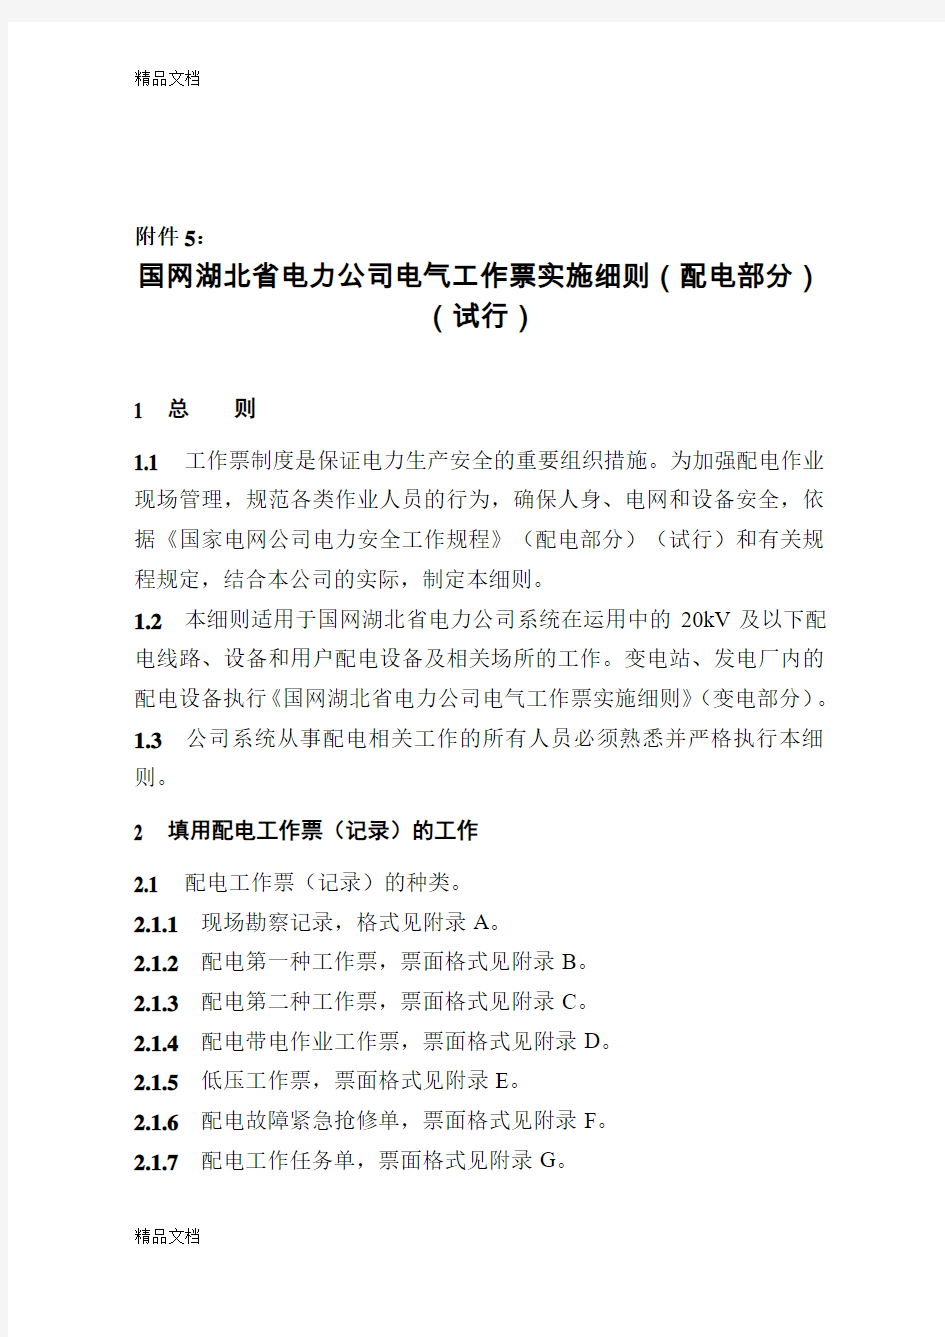 最新国网湖北省电力公司电气工作票实施细则(配电部分)(试行)资料